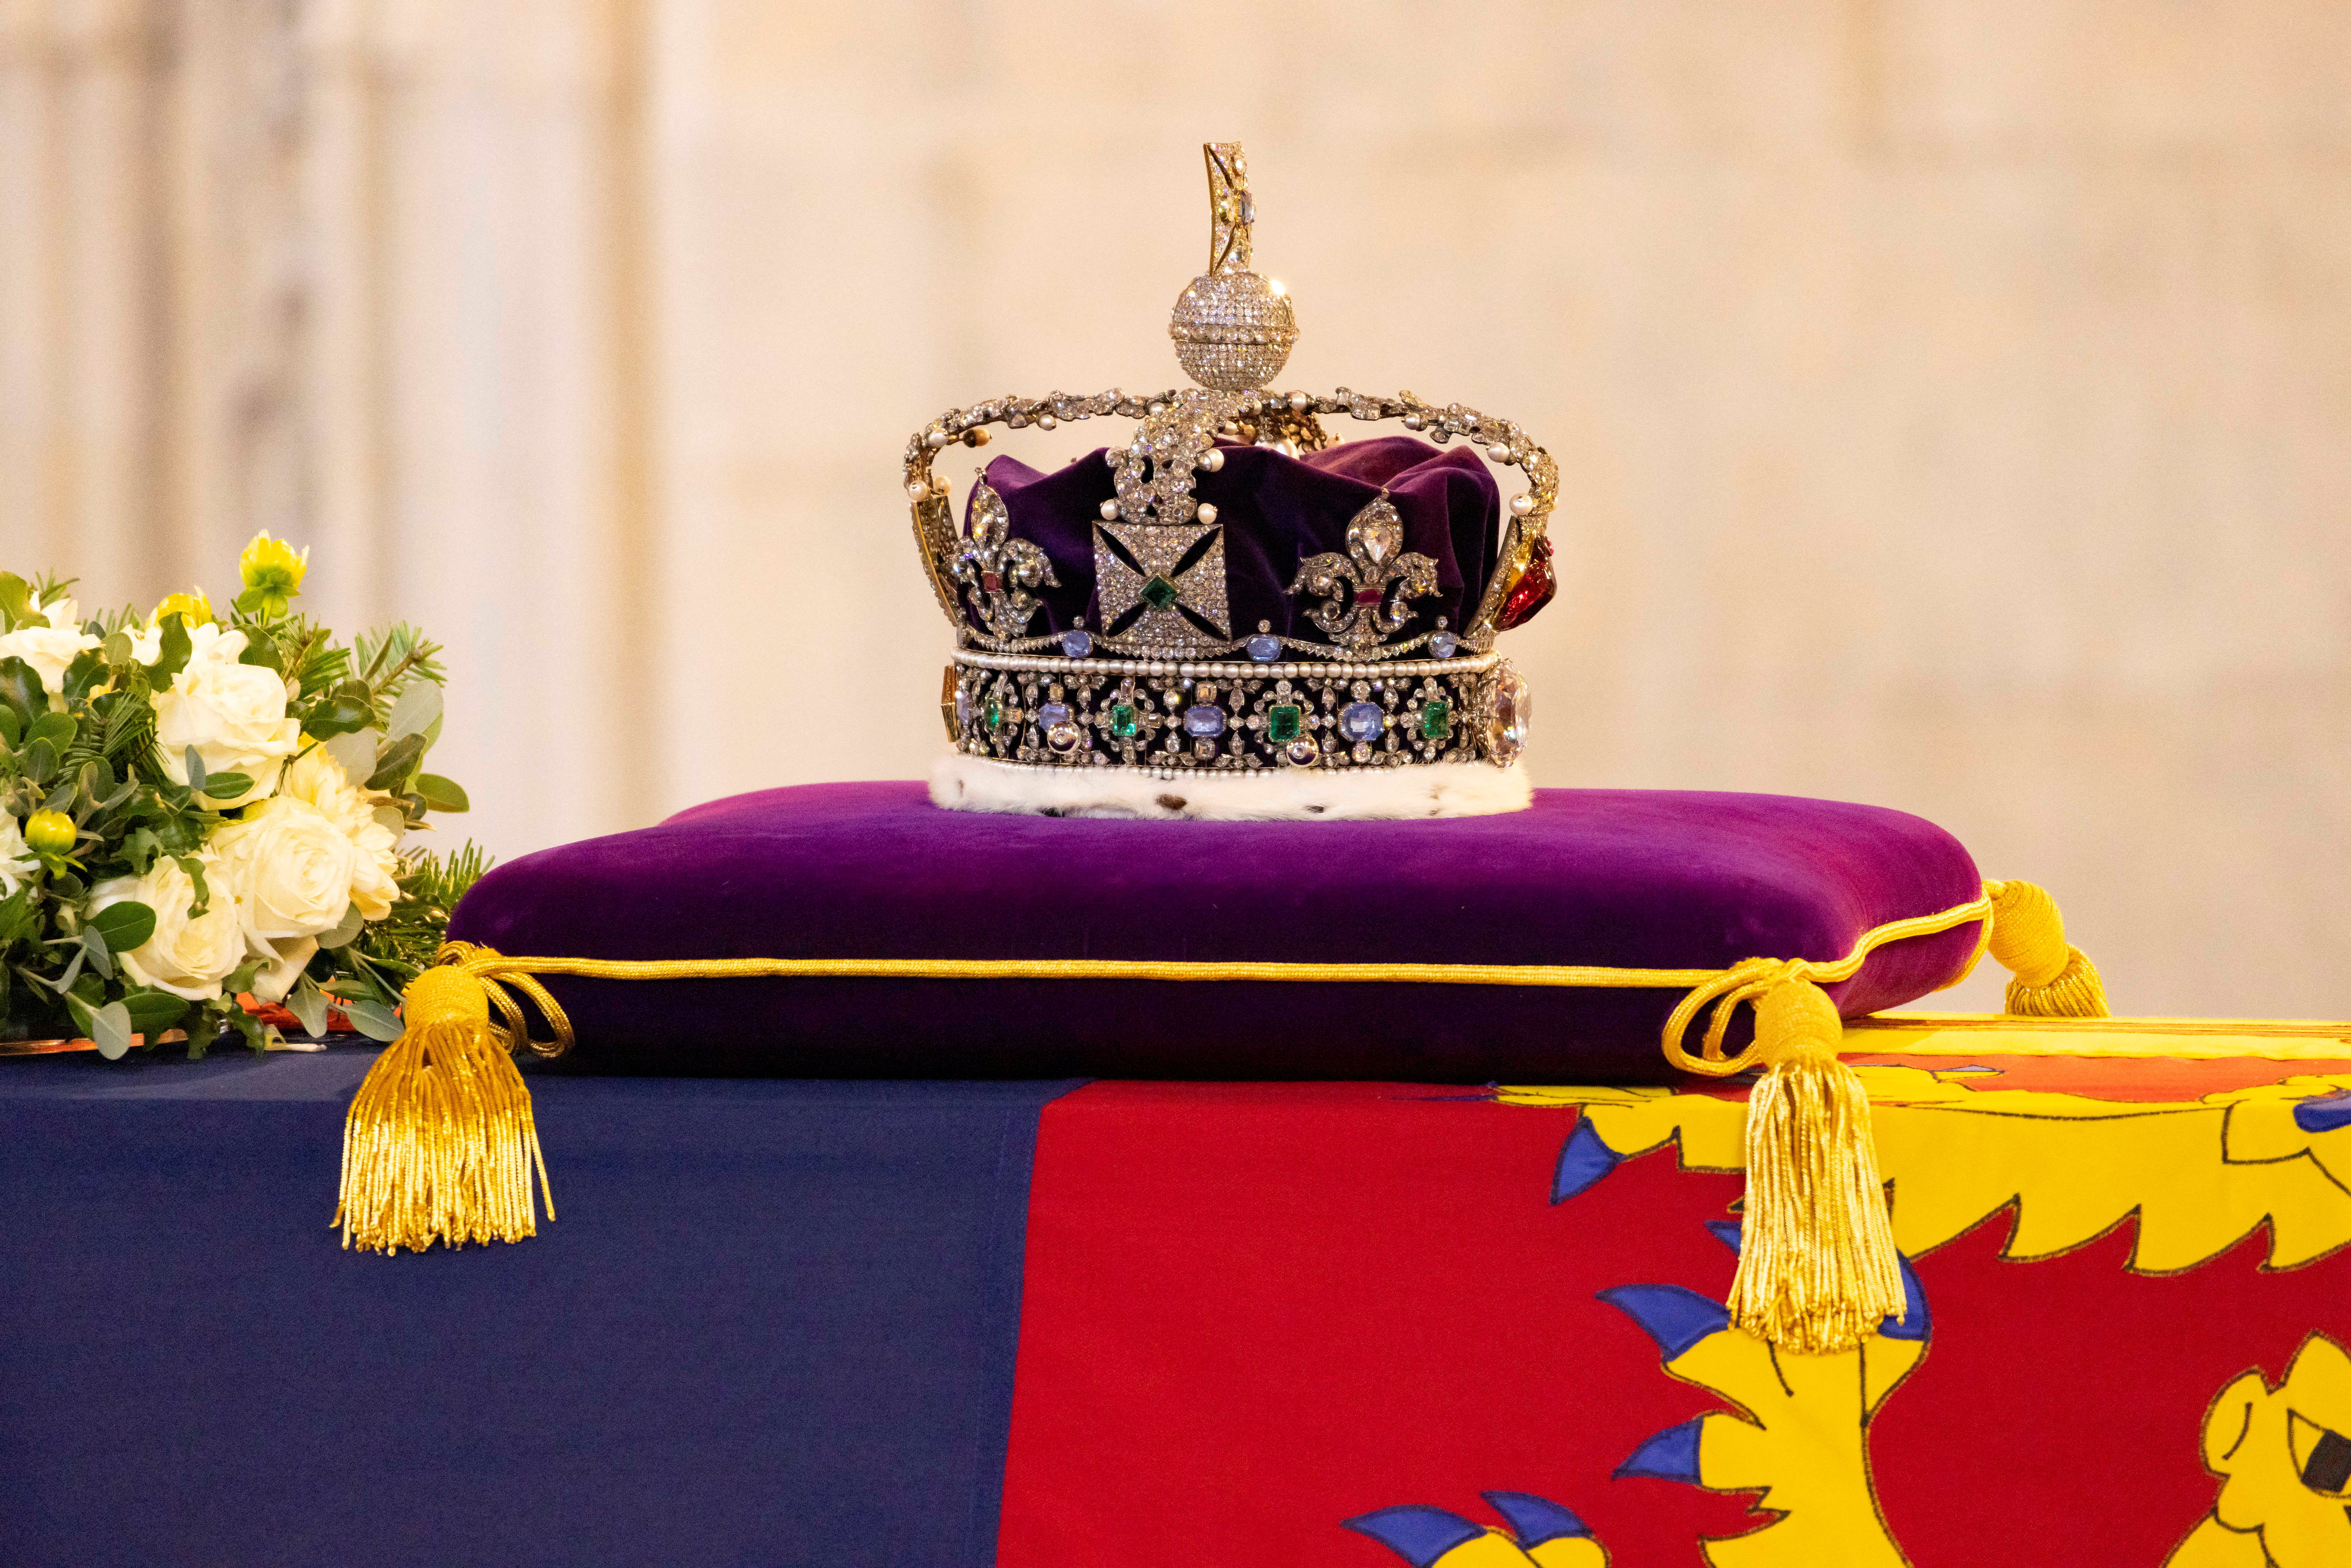 El ataúd de la reina Isabel, envuelto en un estandarte real y adornado con la corona del estado imperial, se muestra durante la recepción de su estado en Westminster Hall en Londres, Gran Bretaña